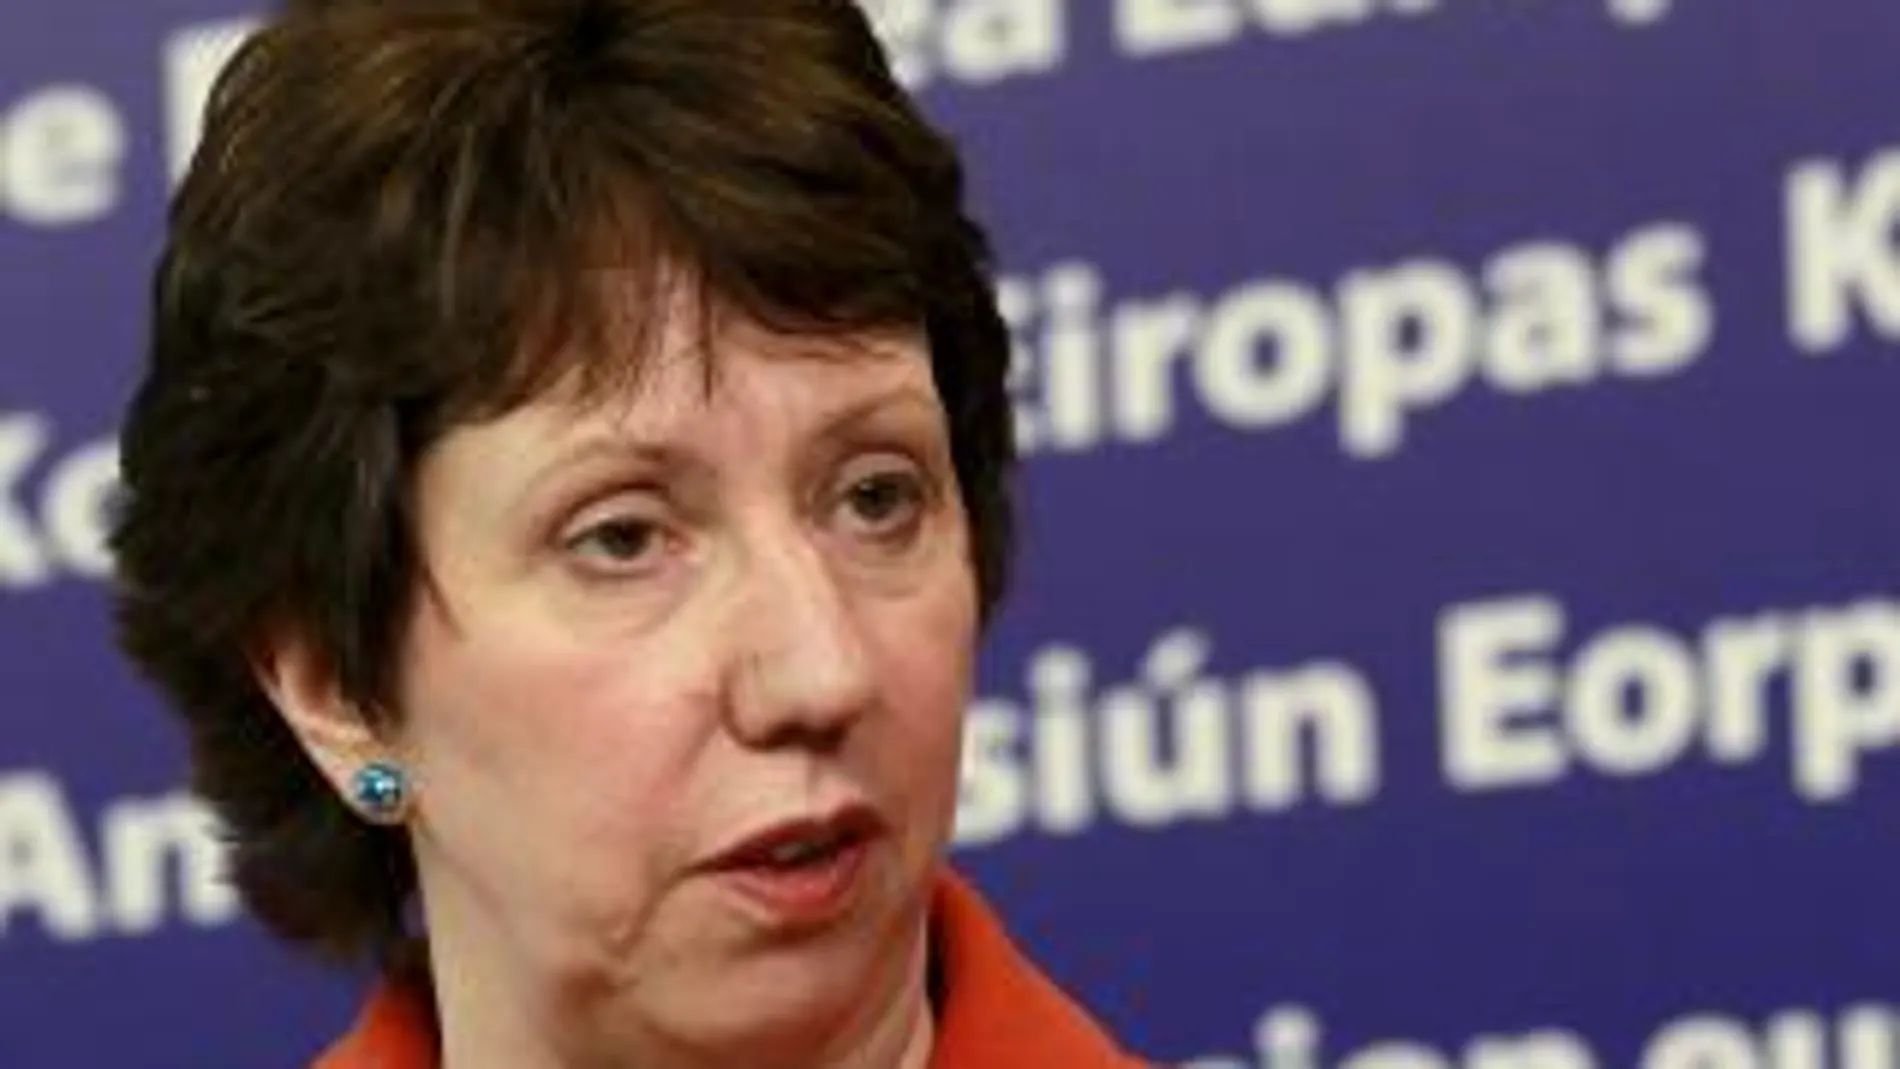 Alta Representante de Asuntos Exteriores de la UE, Catherine Ashton